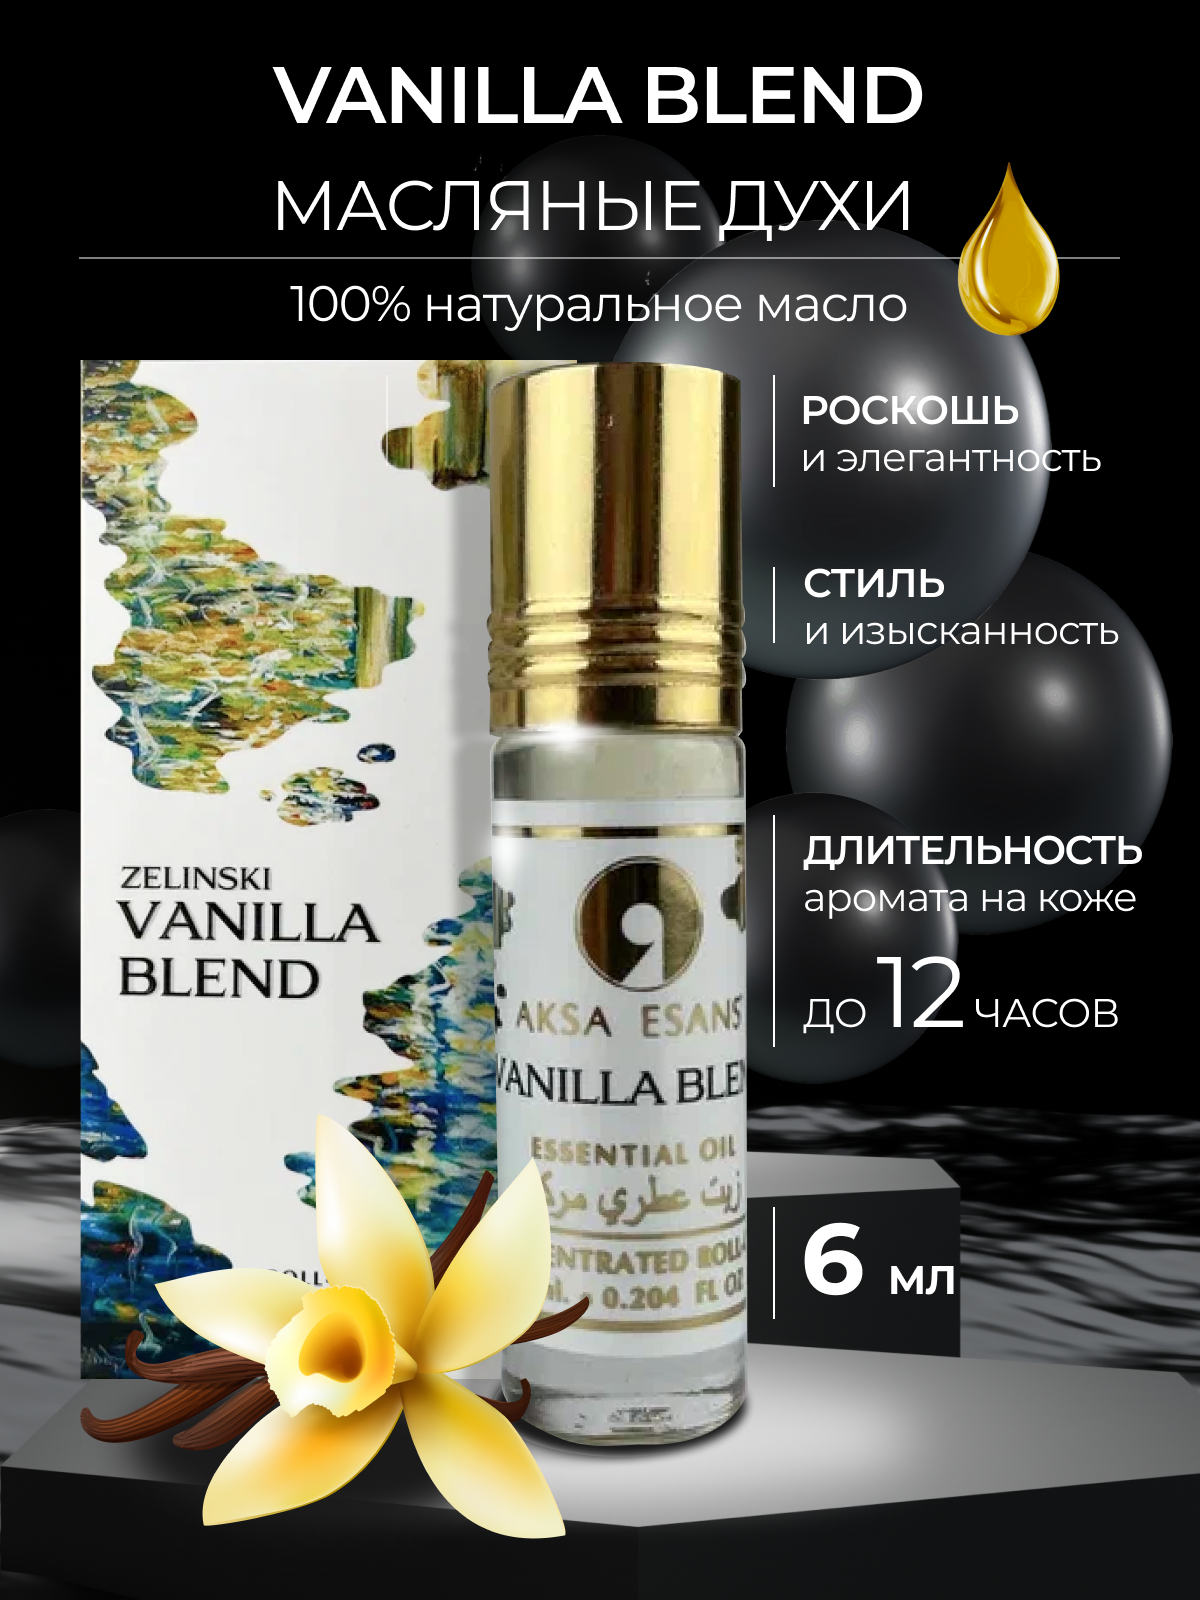 Масляные женские духи Aksa Esans Vanilla Blend, Ванилла Бленд, ваниль парфюм, 6 мл